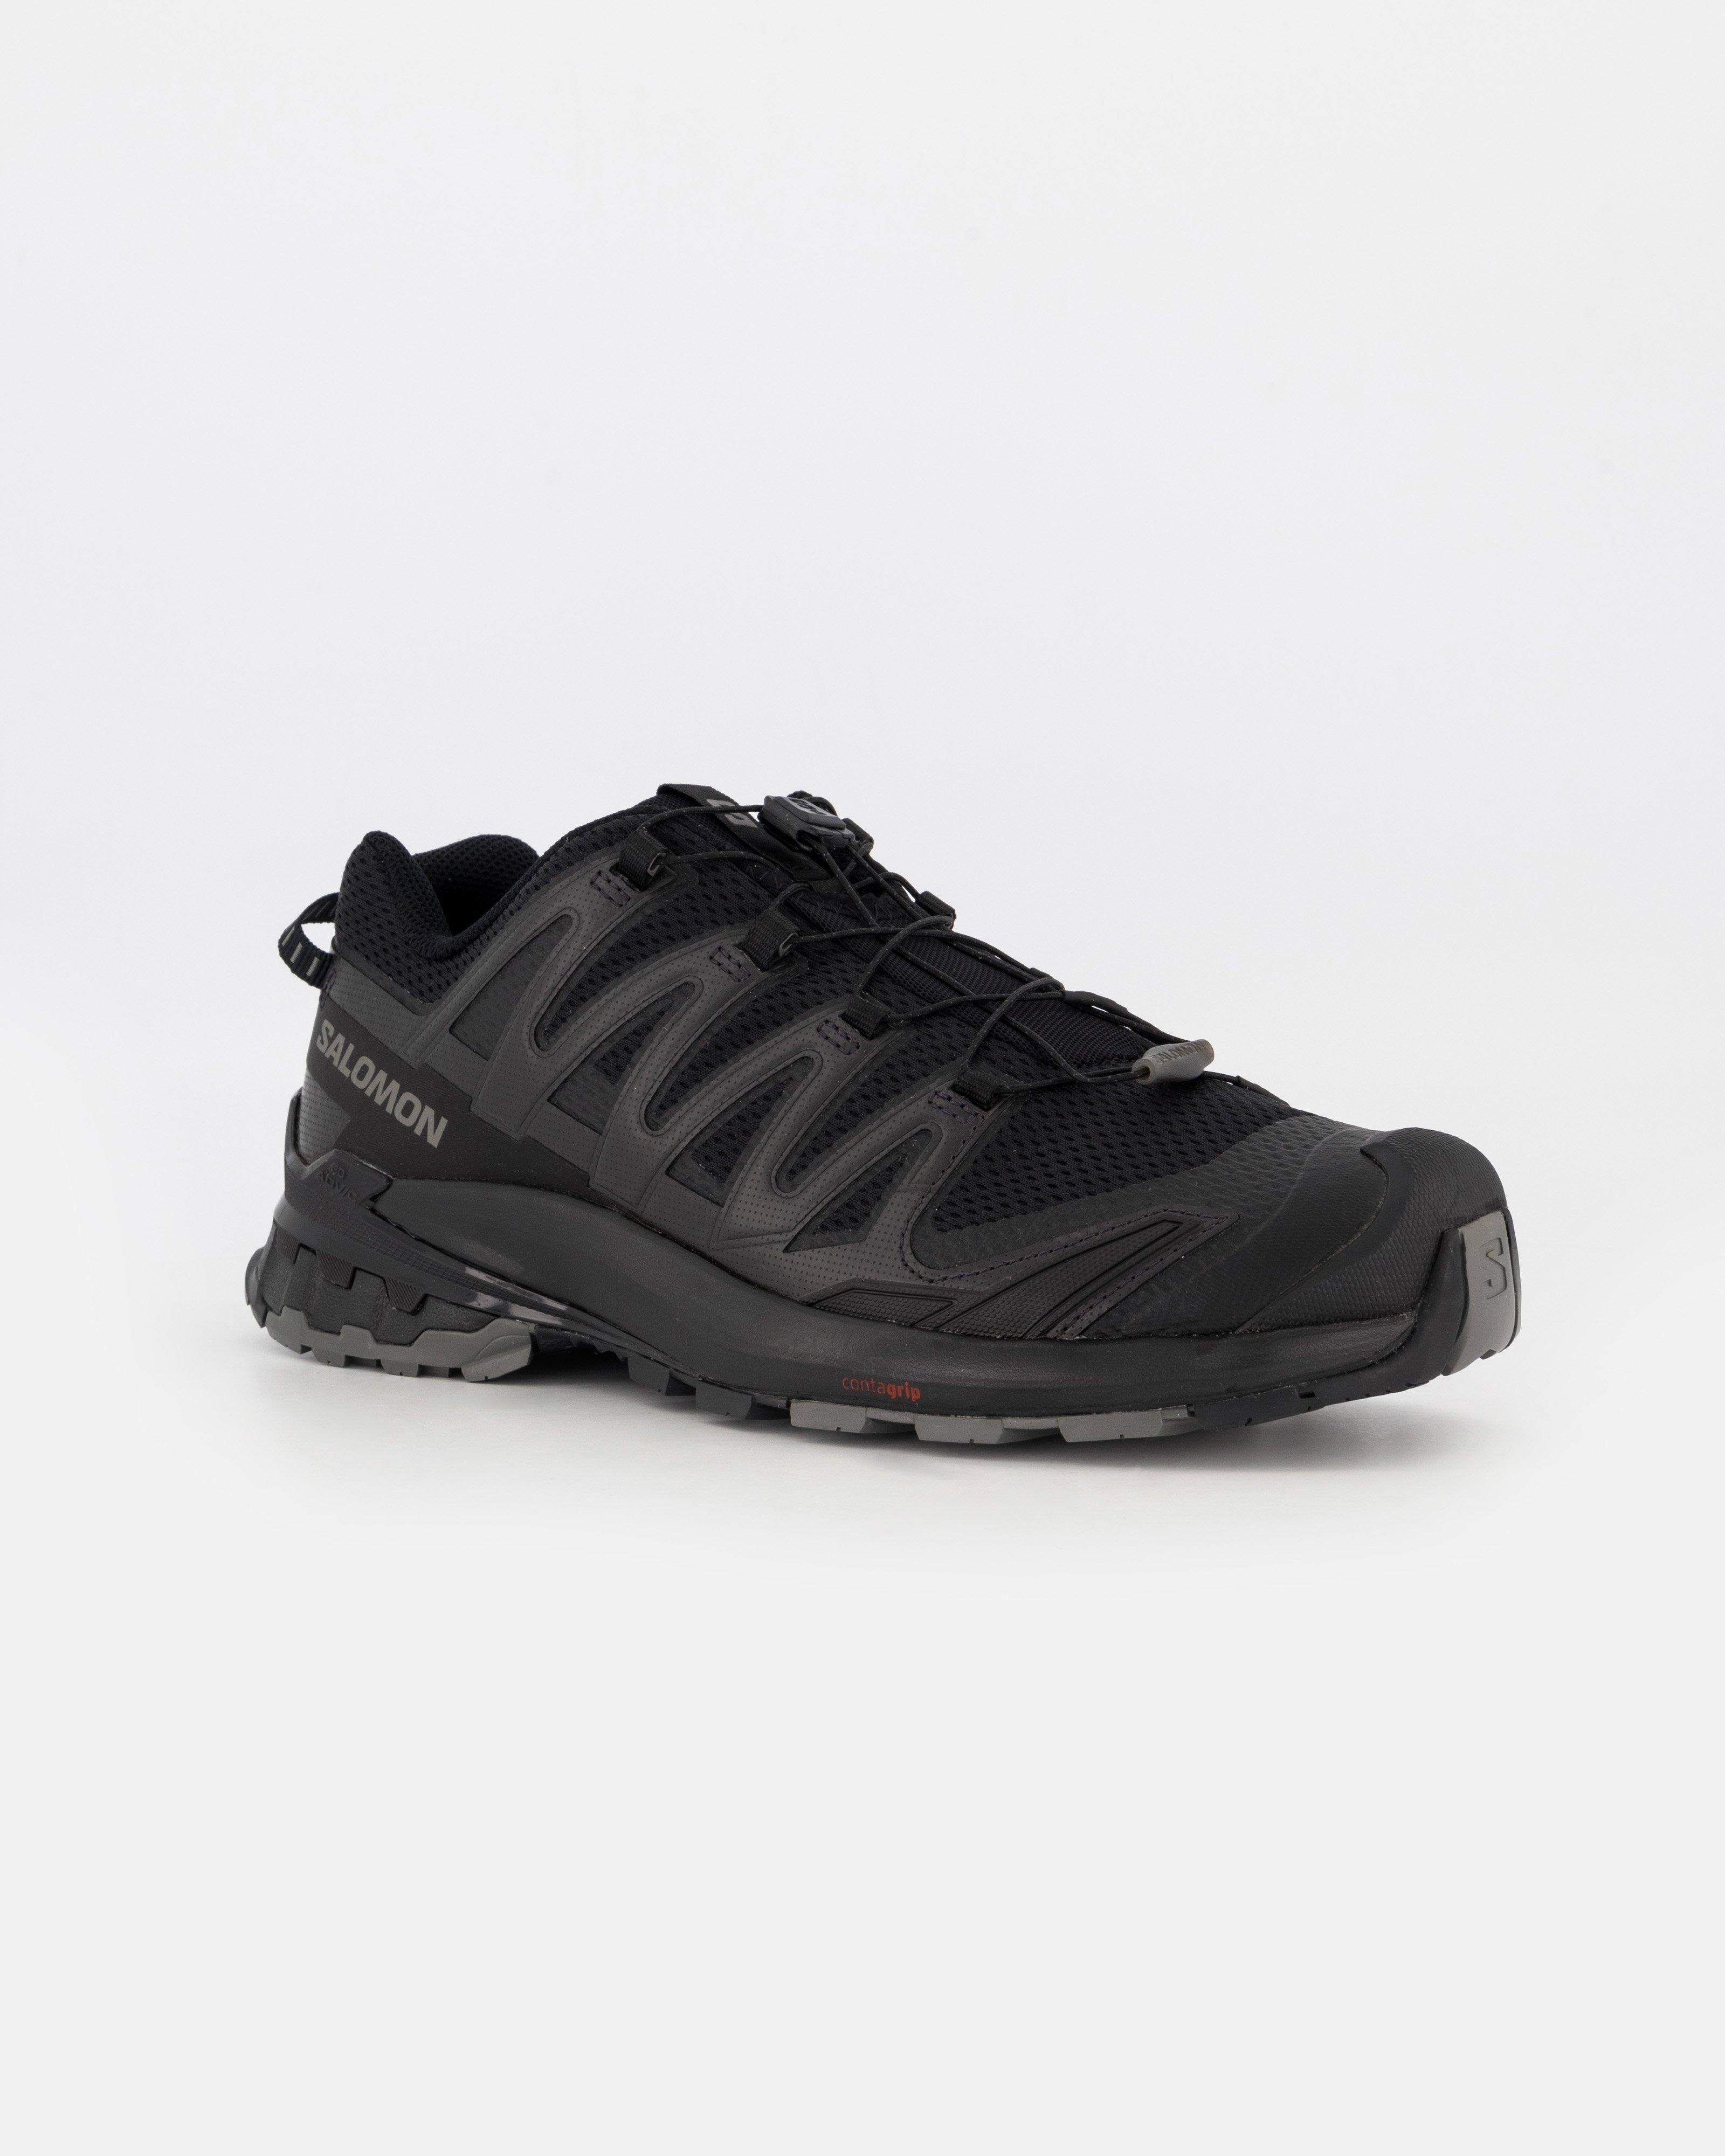 Salomon Men's XA Pro 3D V9 Trail Running Shoes -  Black